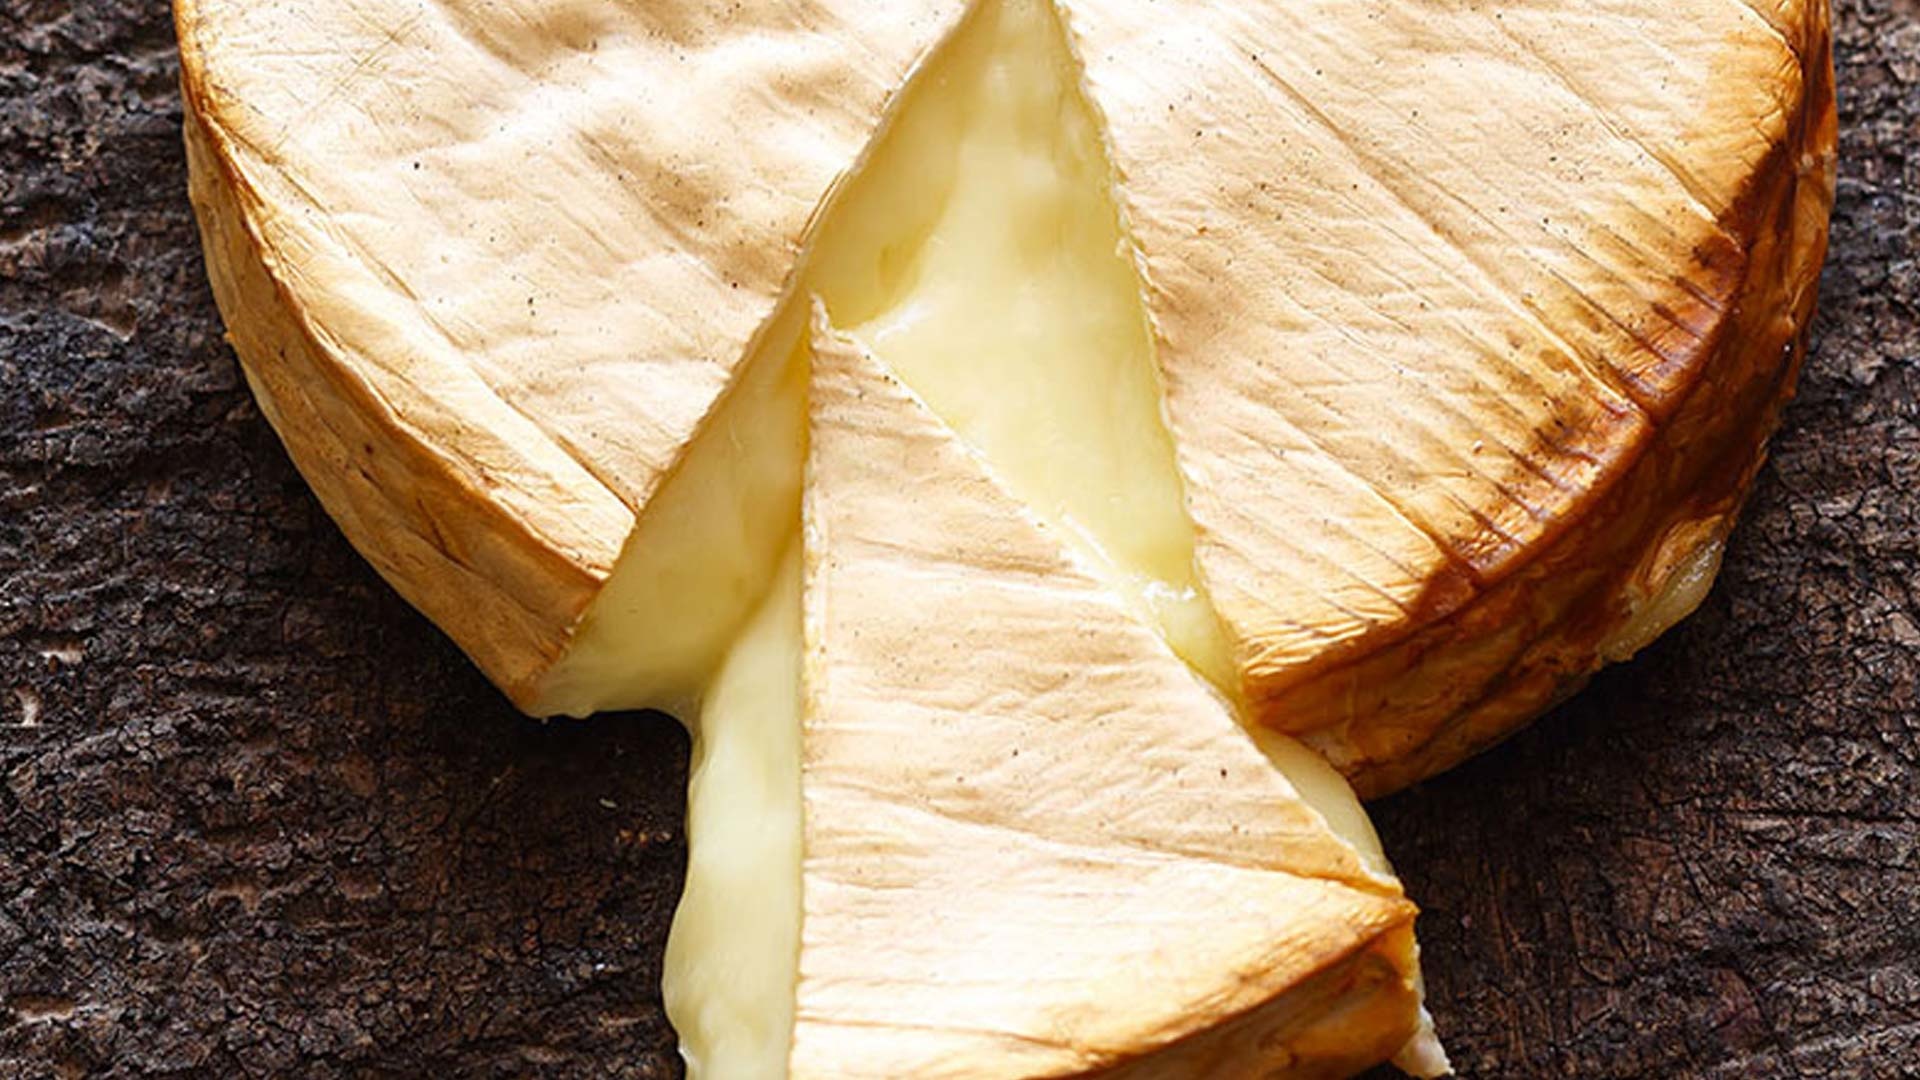  Brie vom Zedernholzbrett aus dem Dutch Oven


